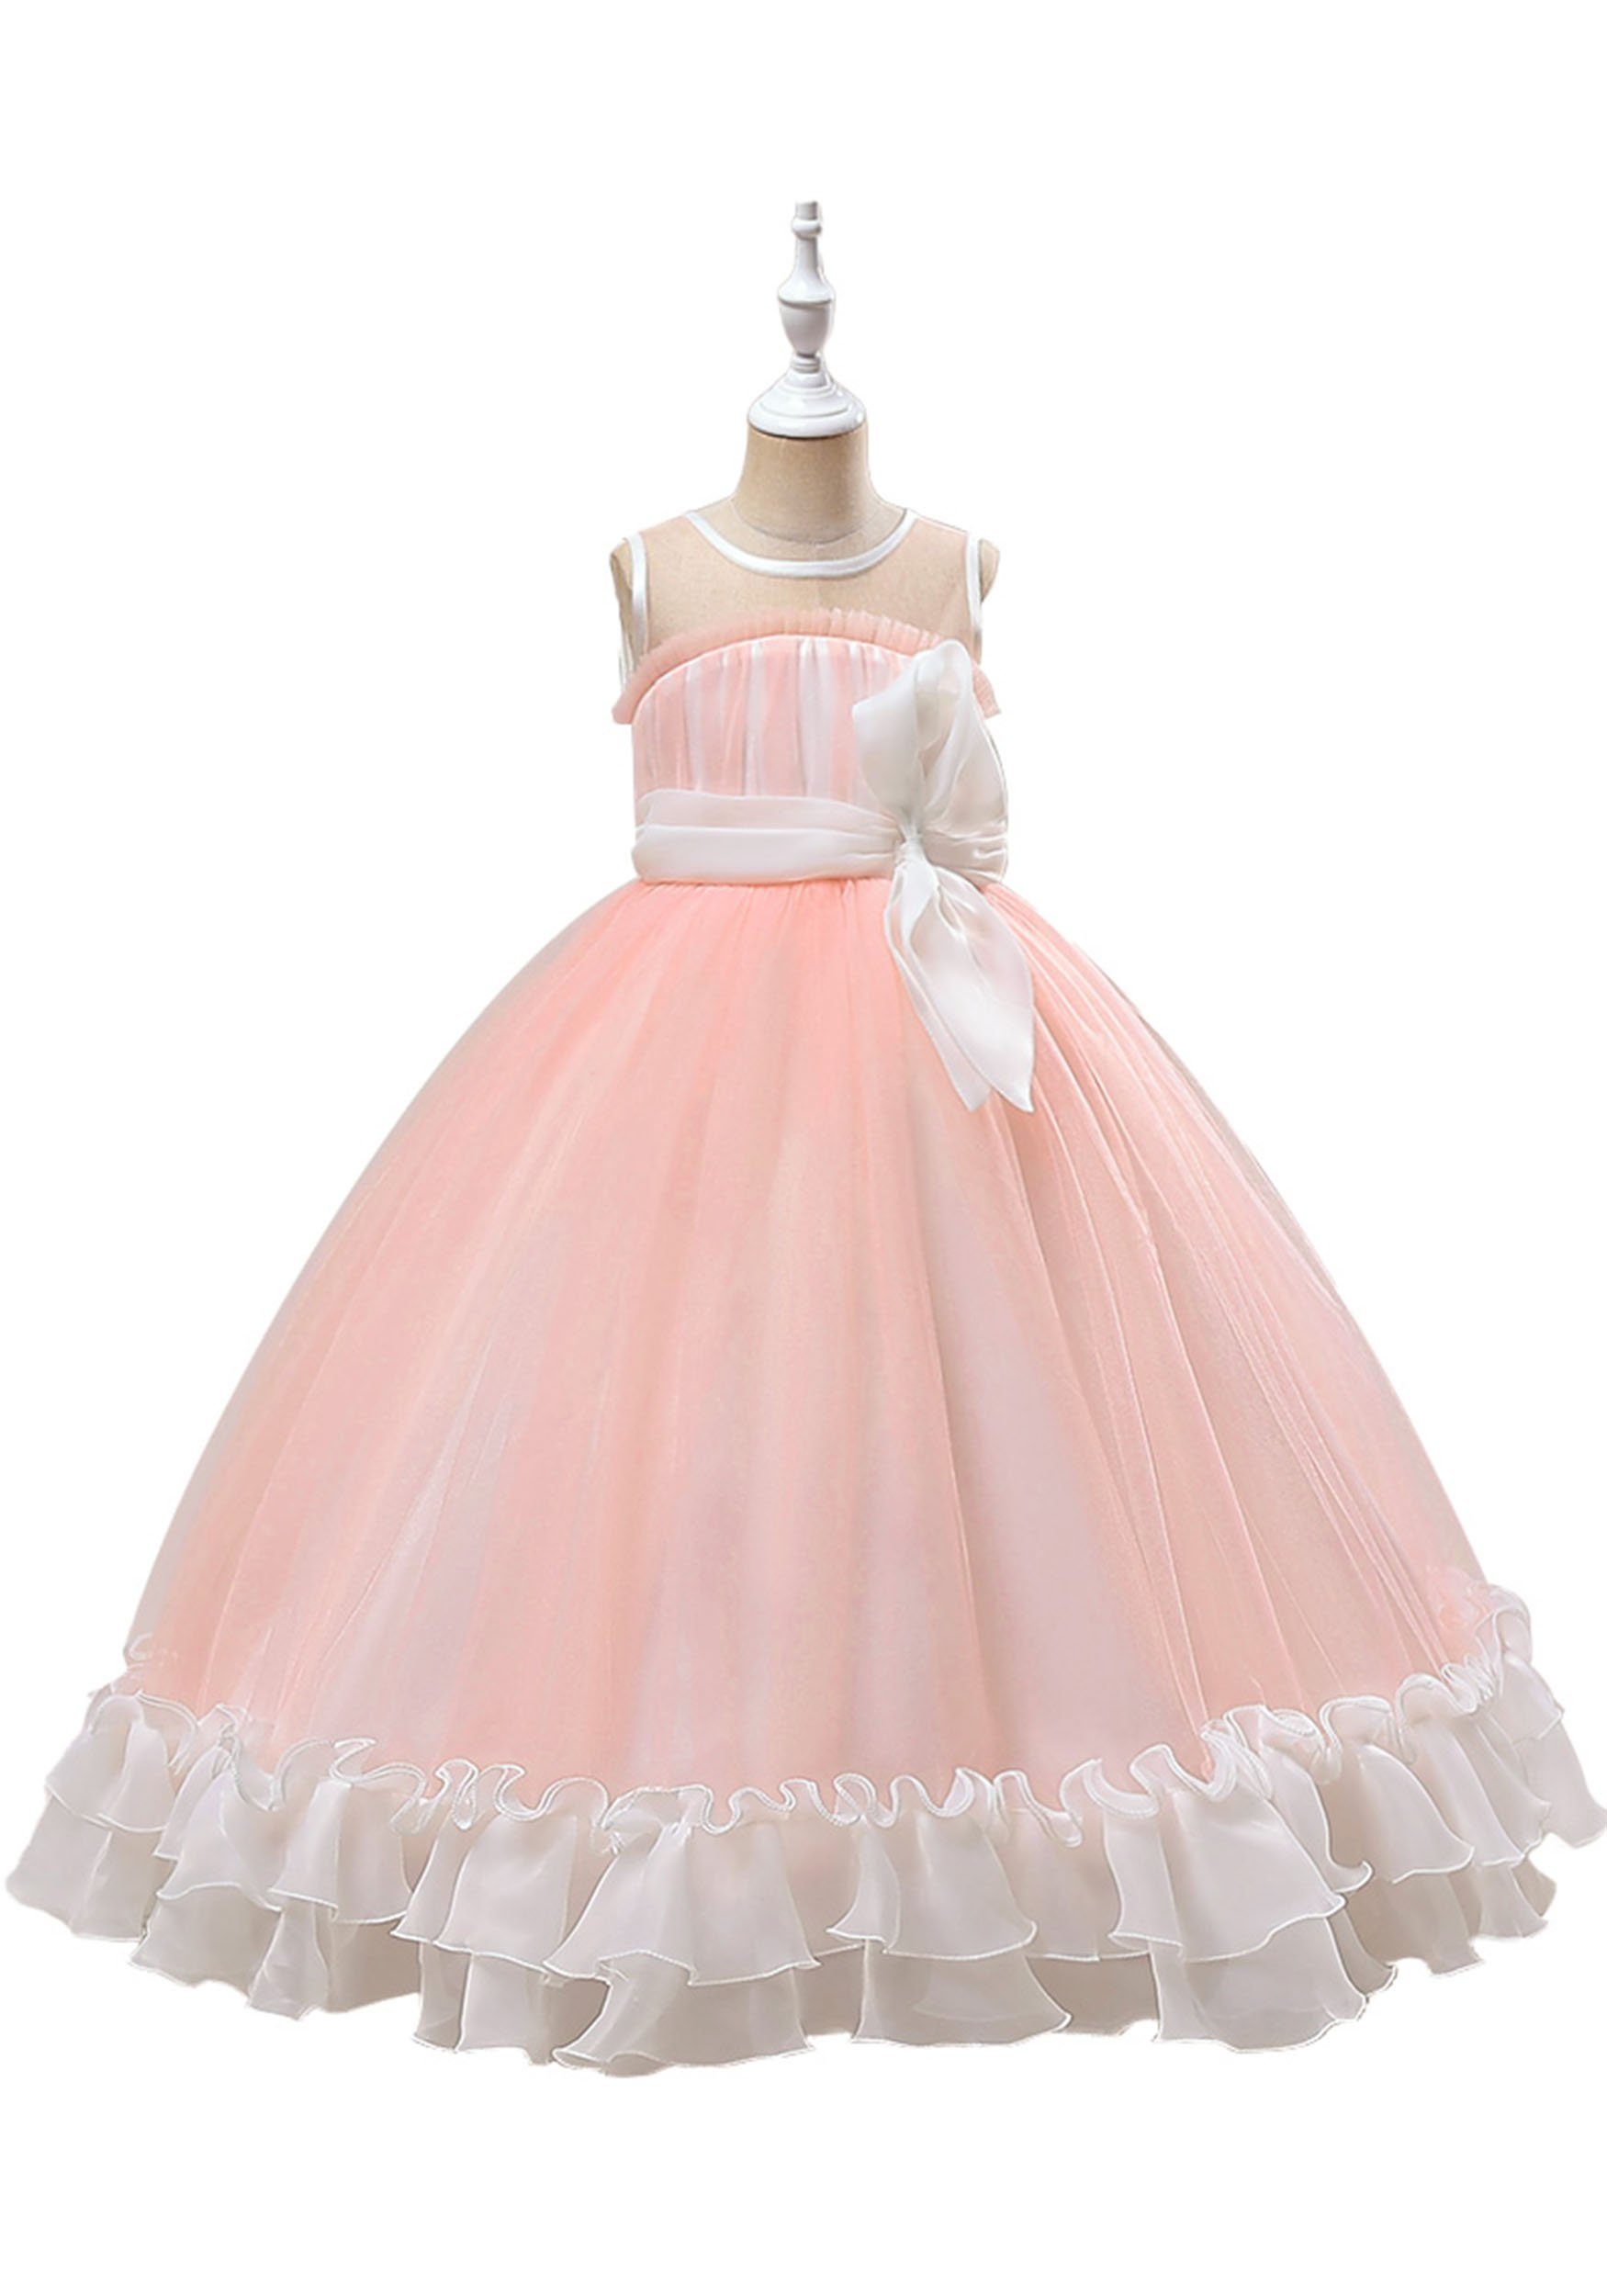 Tüllkleid Prinzessin Blumenmädchenkleider Daisred Partykleid Kleid Festlich